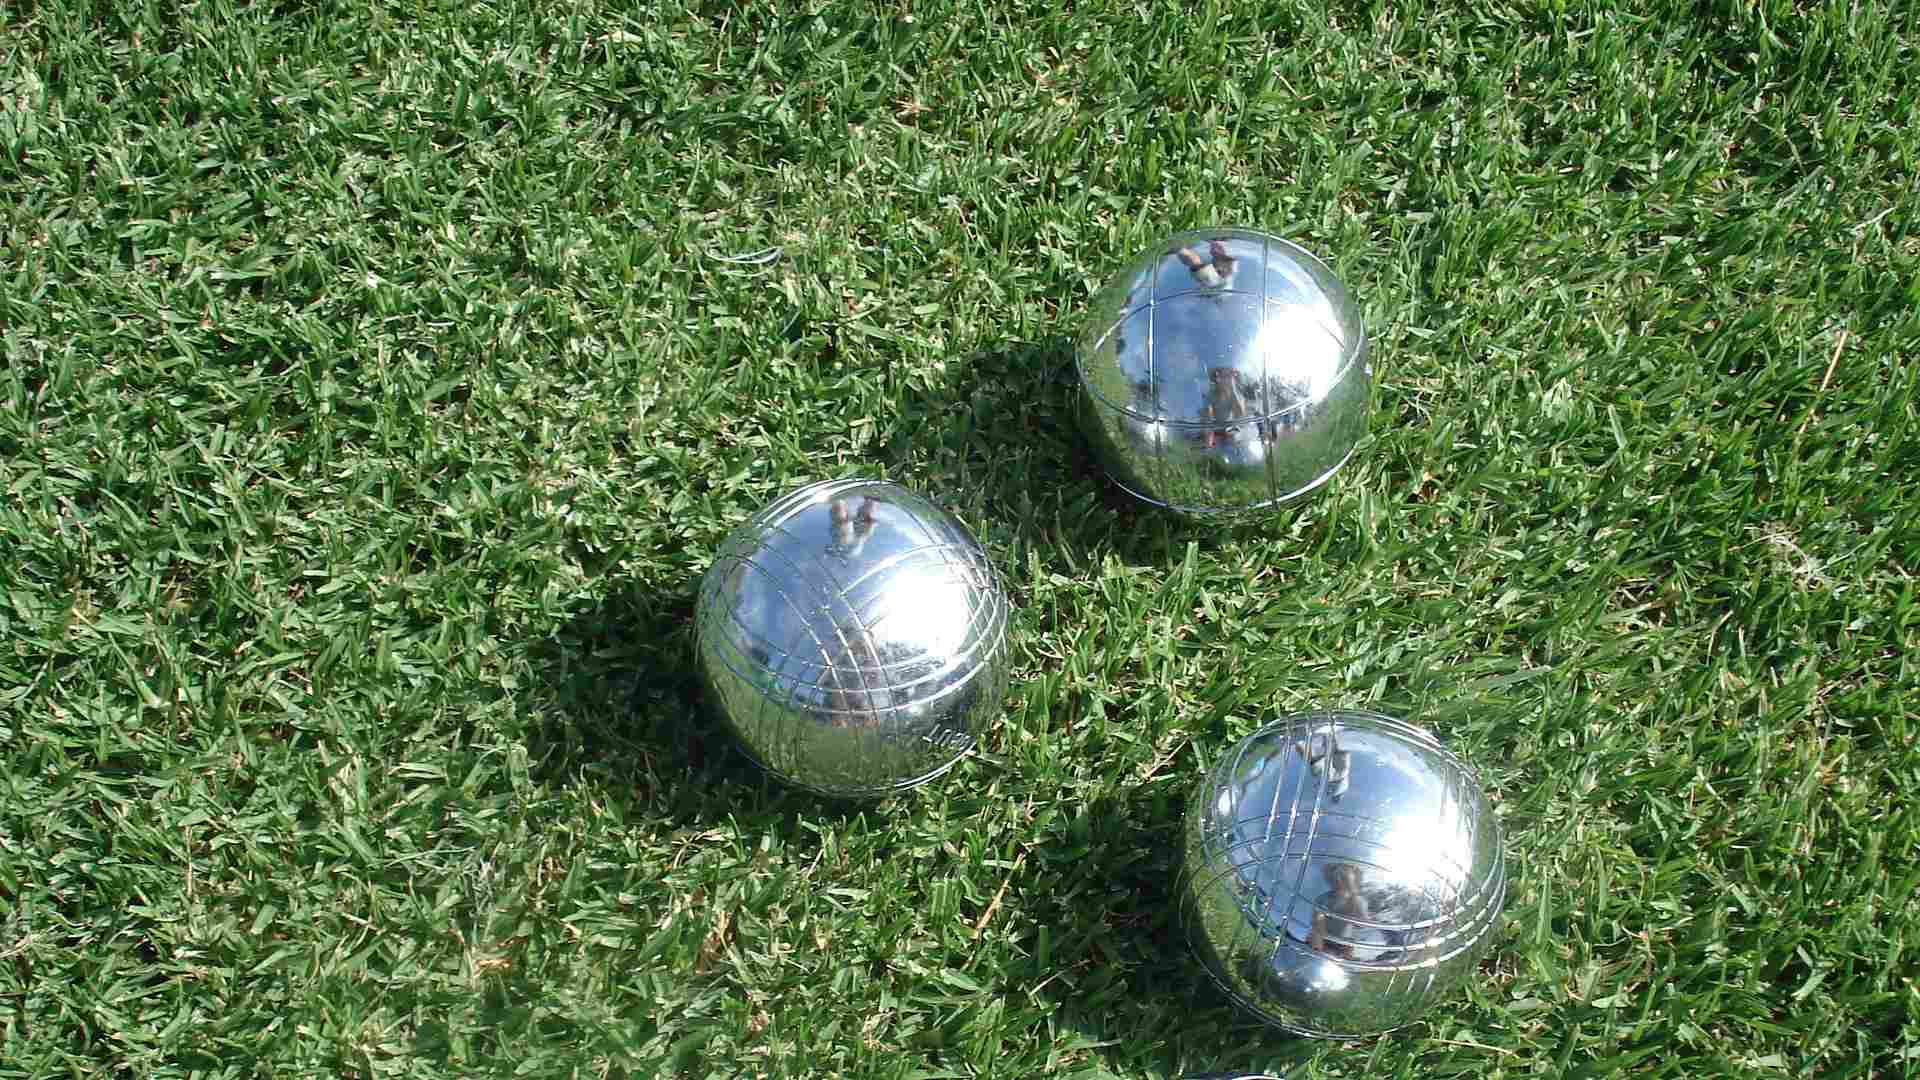 petanque balls on grass